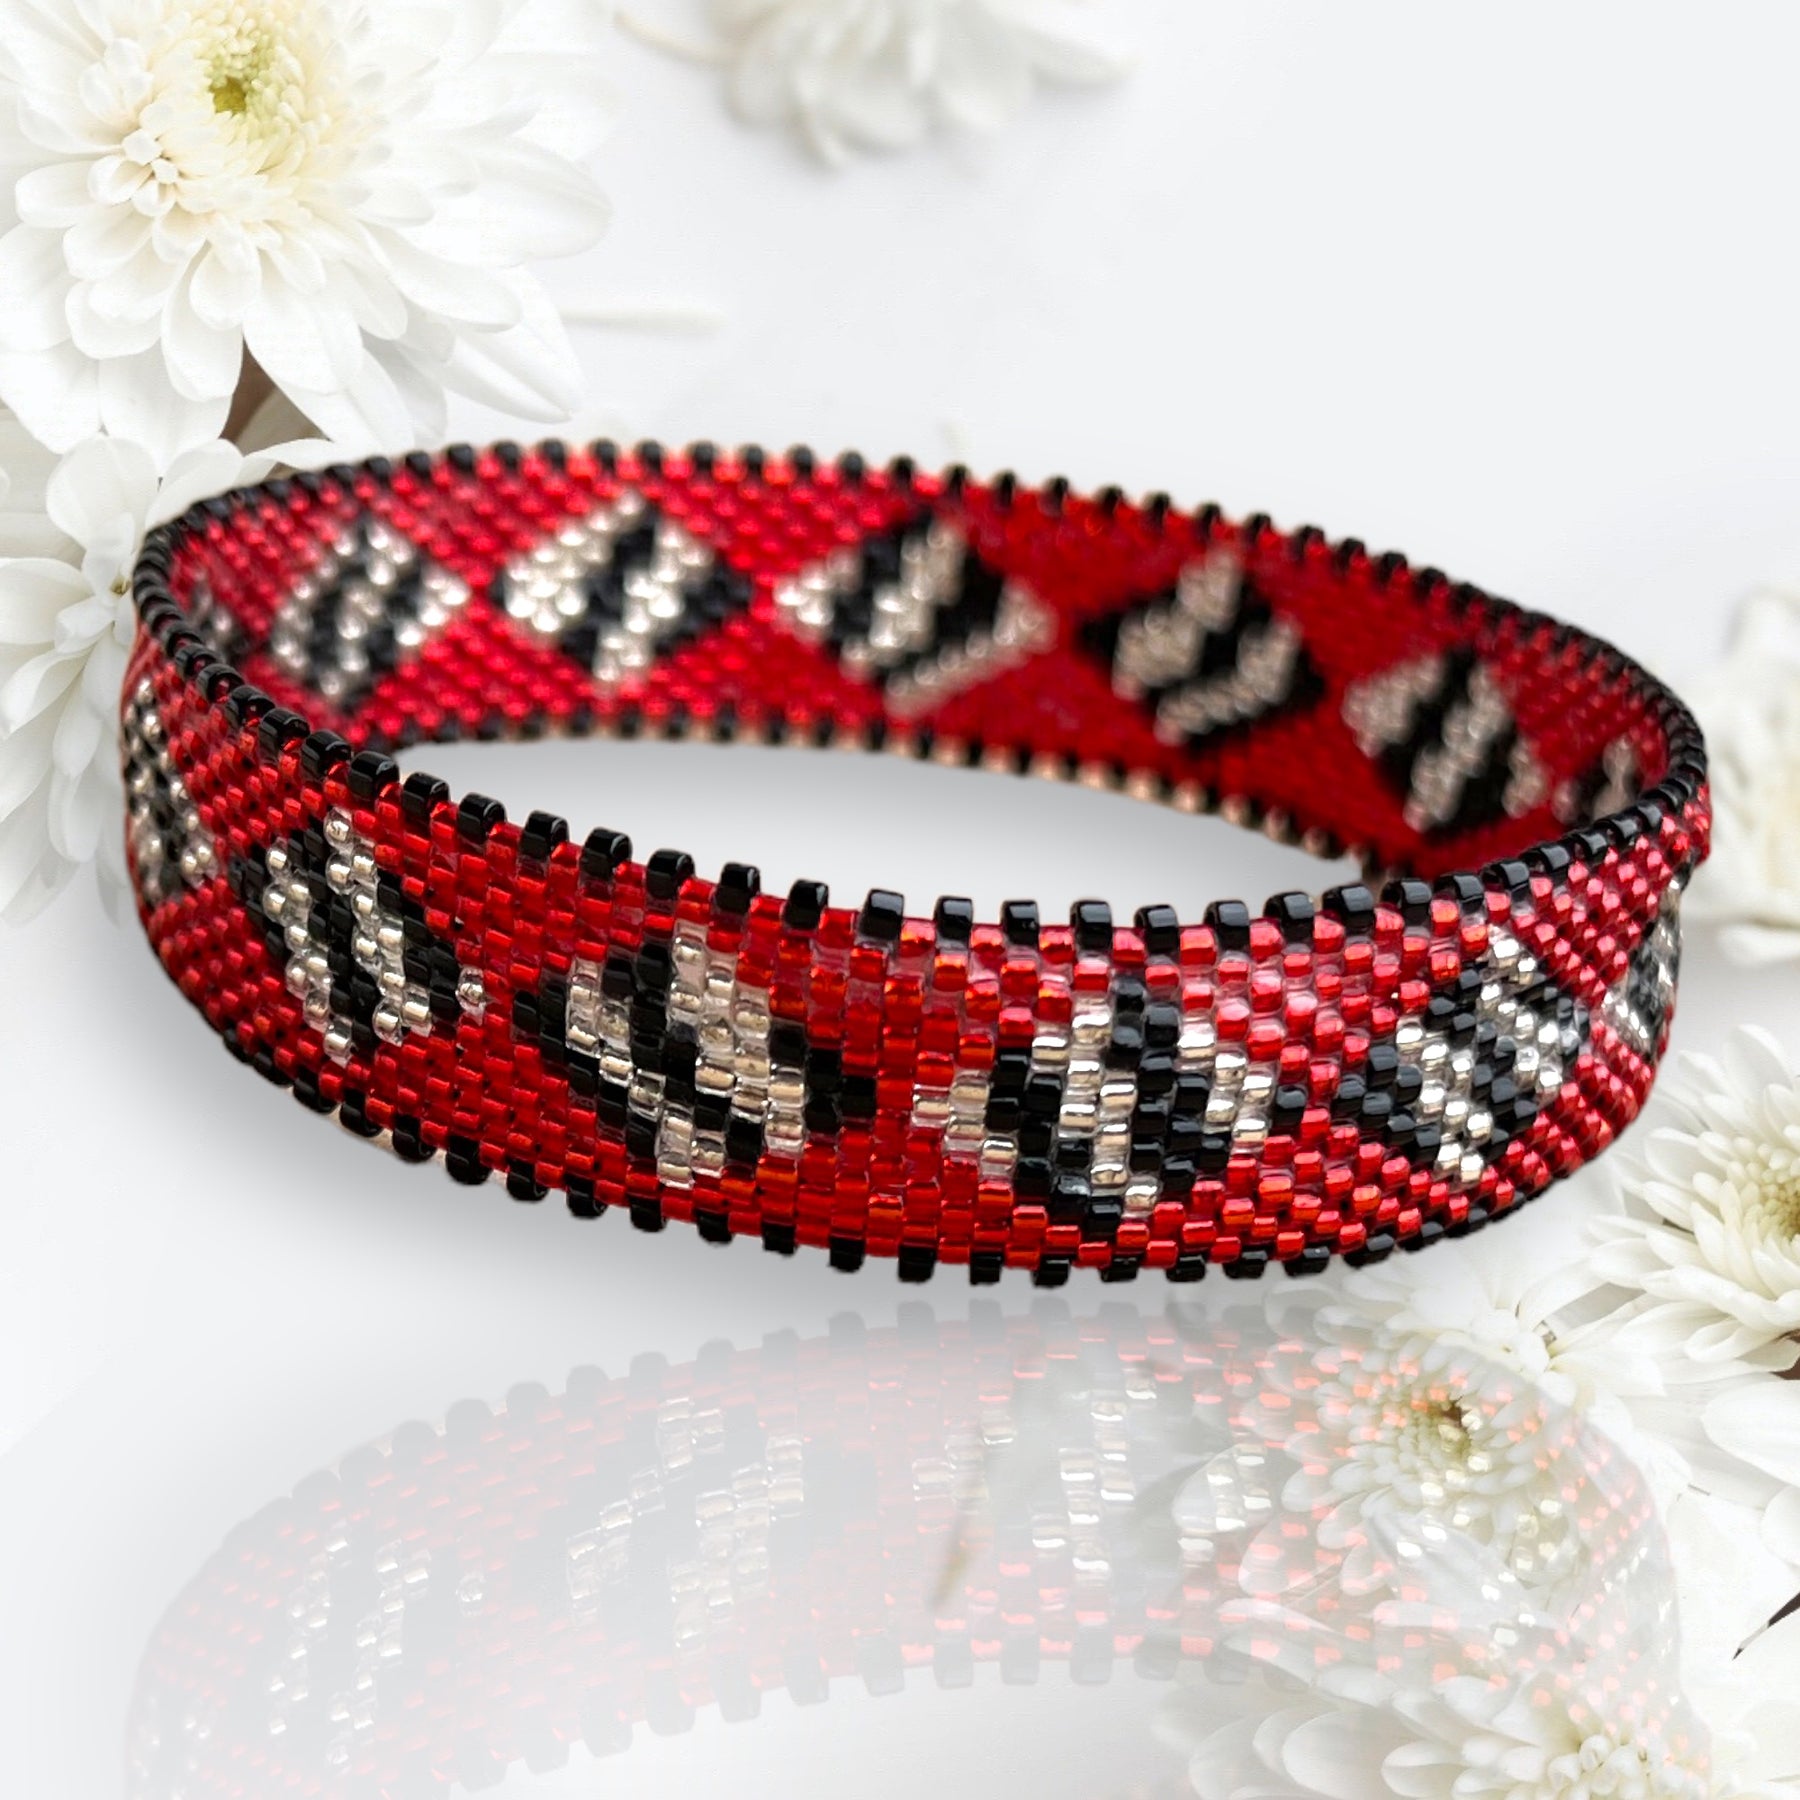 DIY miyuki bead Bracelet Pattern - peyote or brick stitch weaving